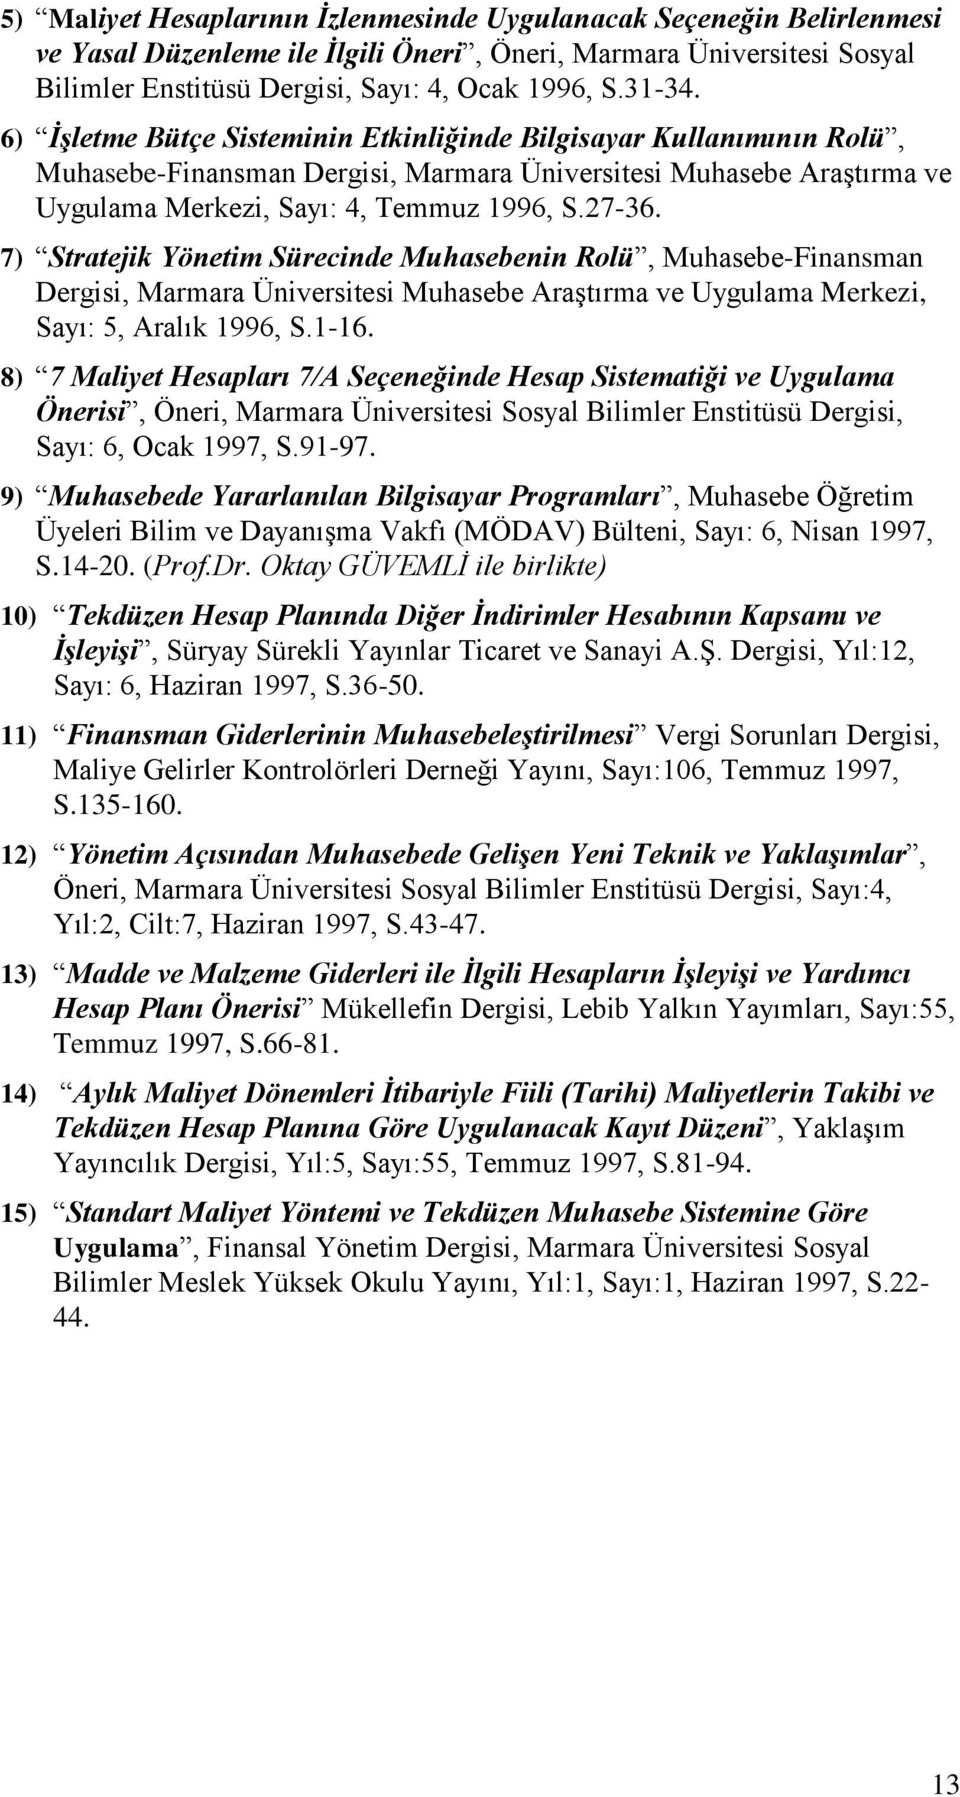 7) Stratejik Yönetim Sürecinde Muhasebenin Rolü, Muhasebe-Finansman Dergisi, Marmara Üniversitesi Muhasebe Araştırma ve Uygulama Merkezi, Sayı: 5, Aralık 1996, S.1-16.